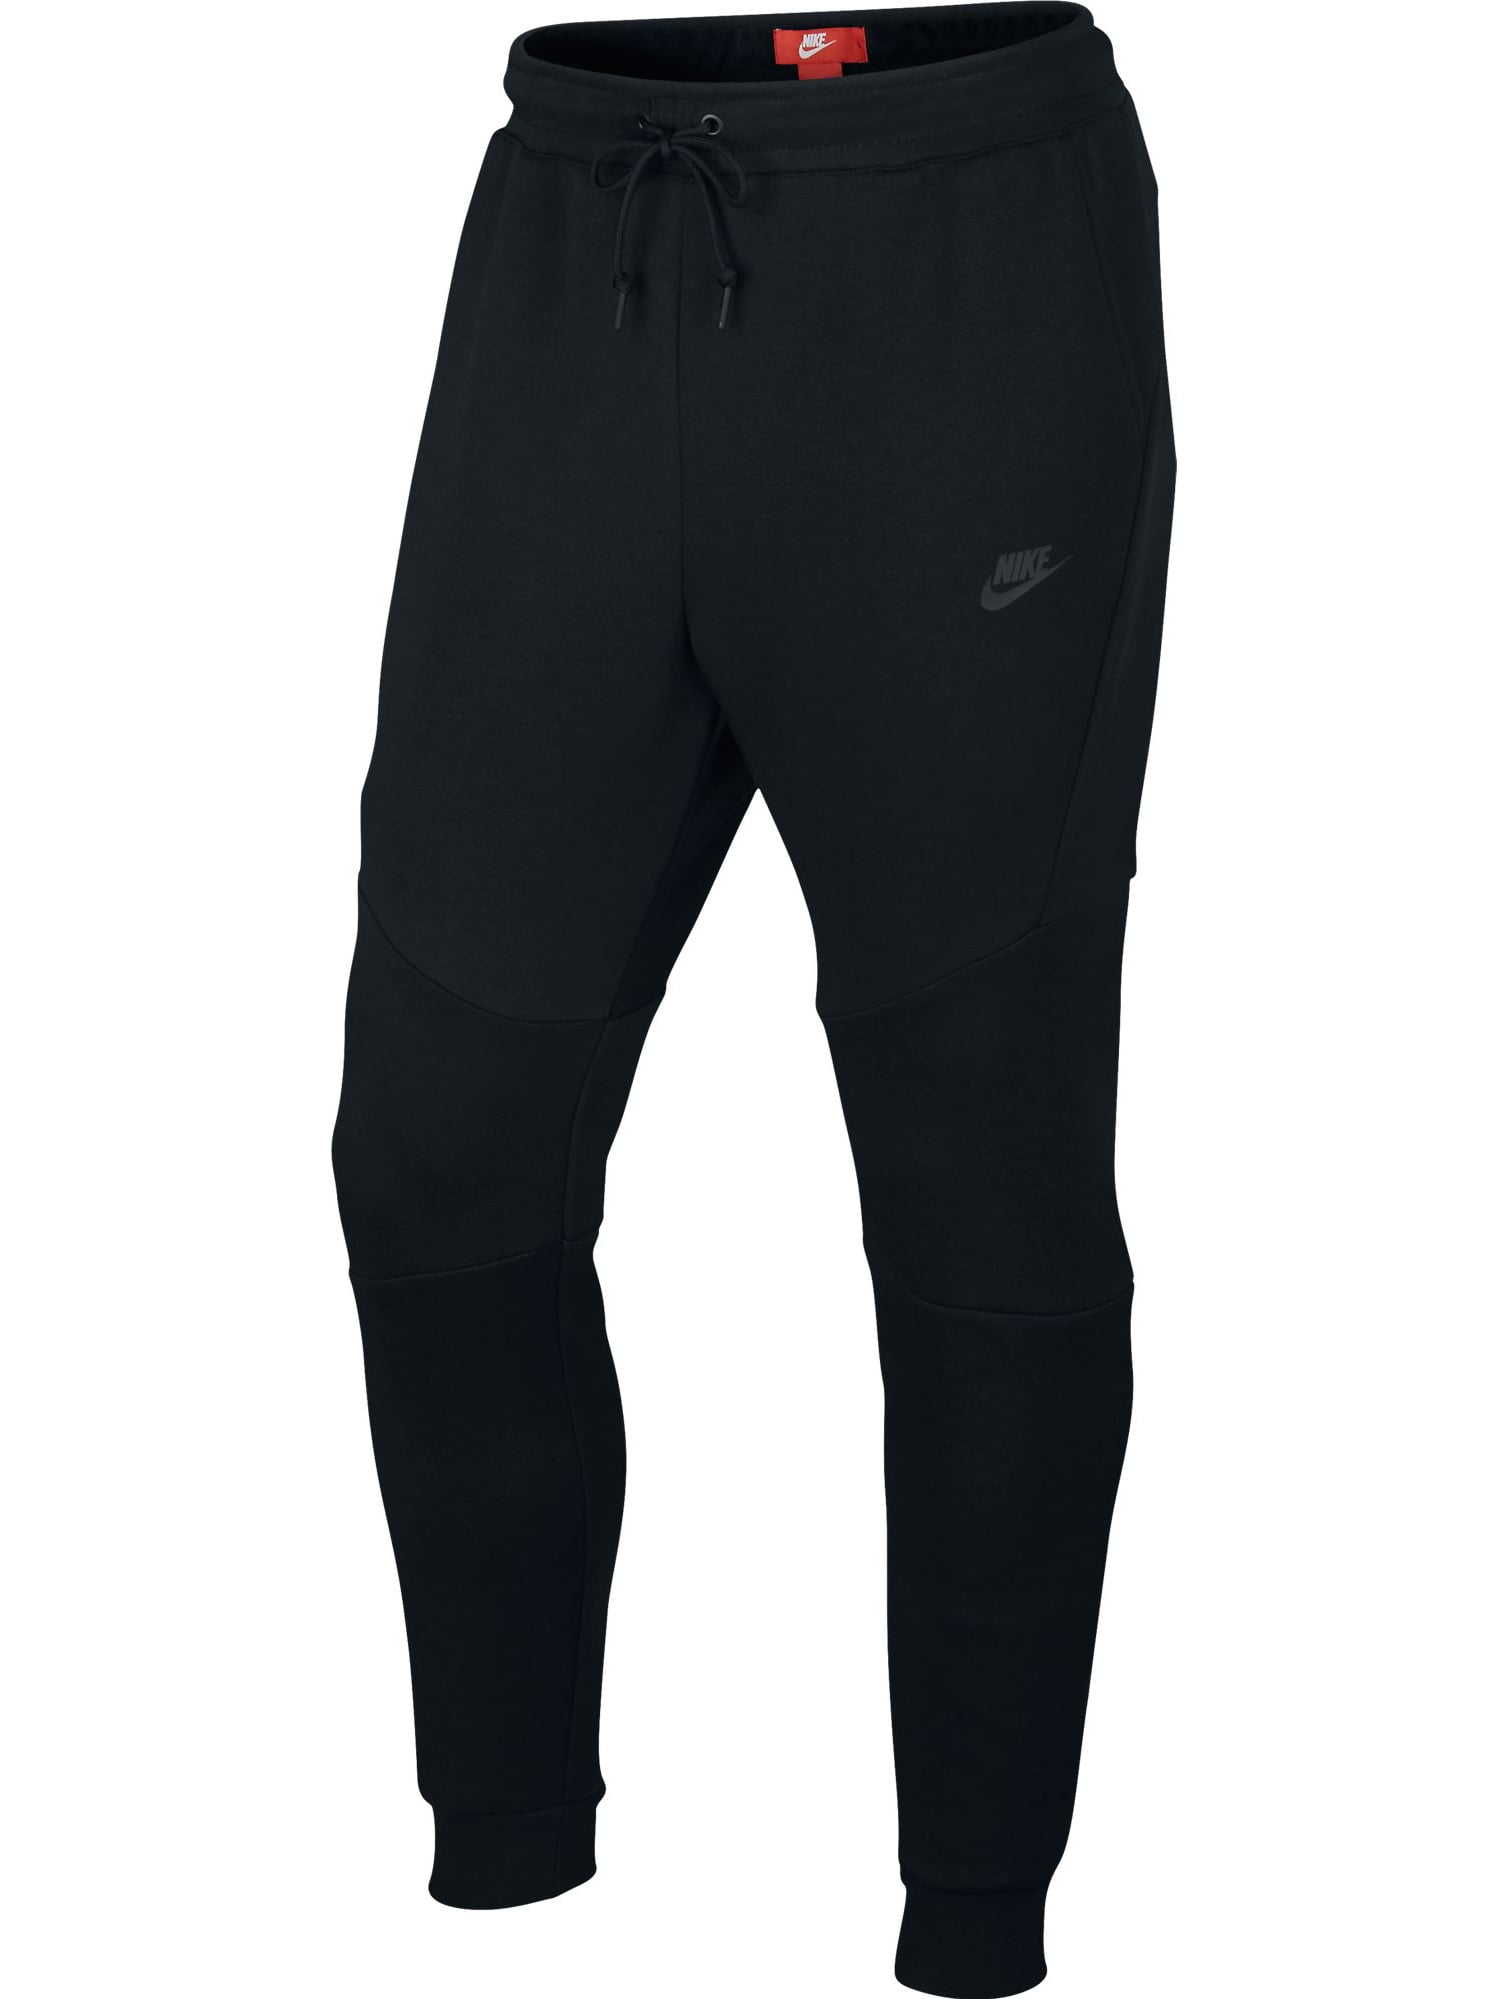 Nike Sportswear Tech Fleece Men's Joggers Black 805162-010